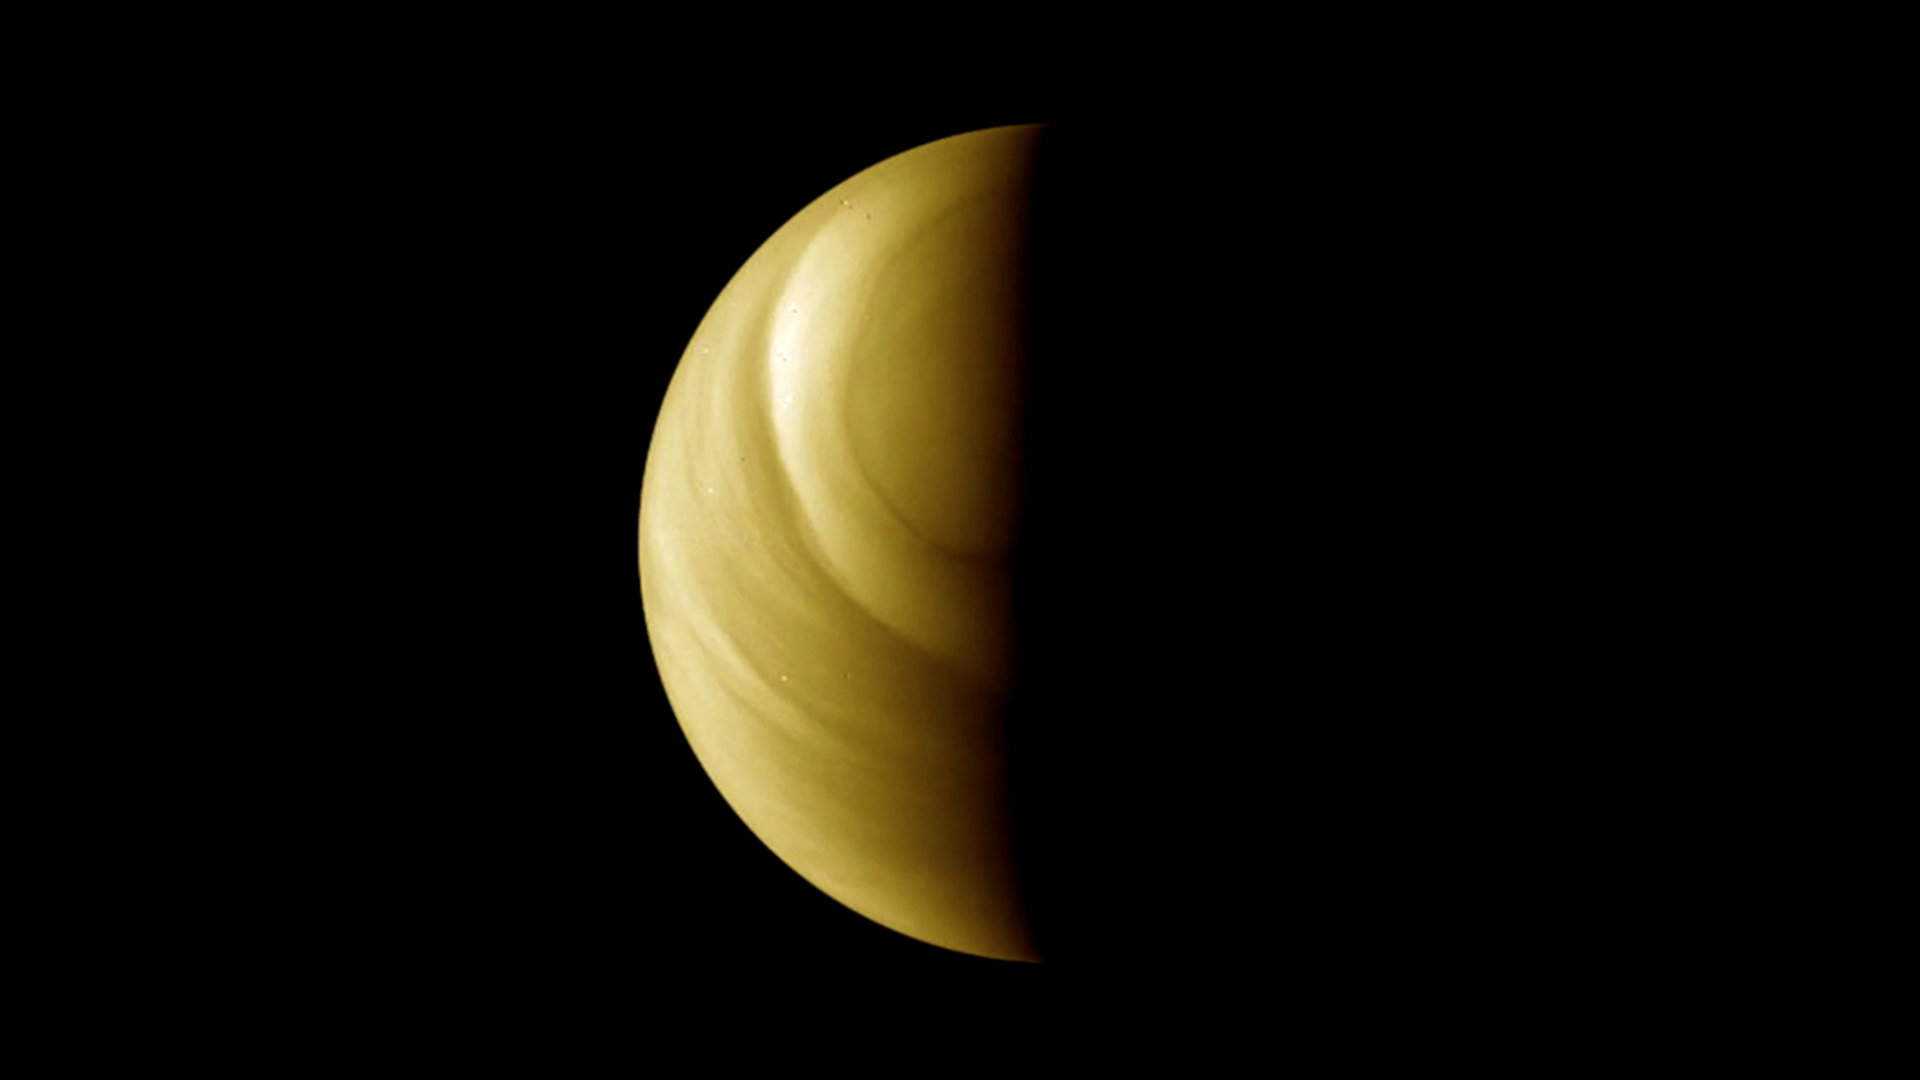 Die Venus, aufgenommen mit der Venus Monitoring Camera